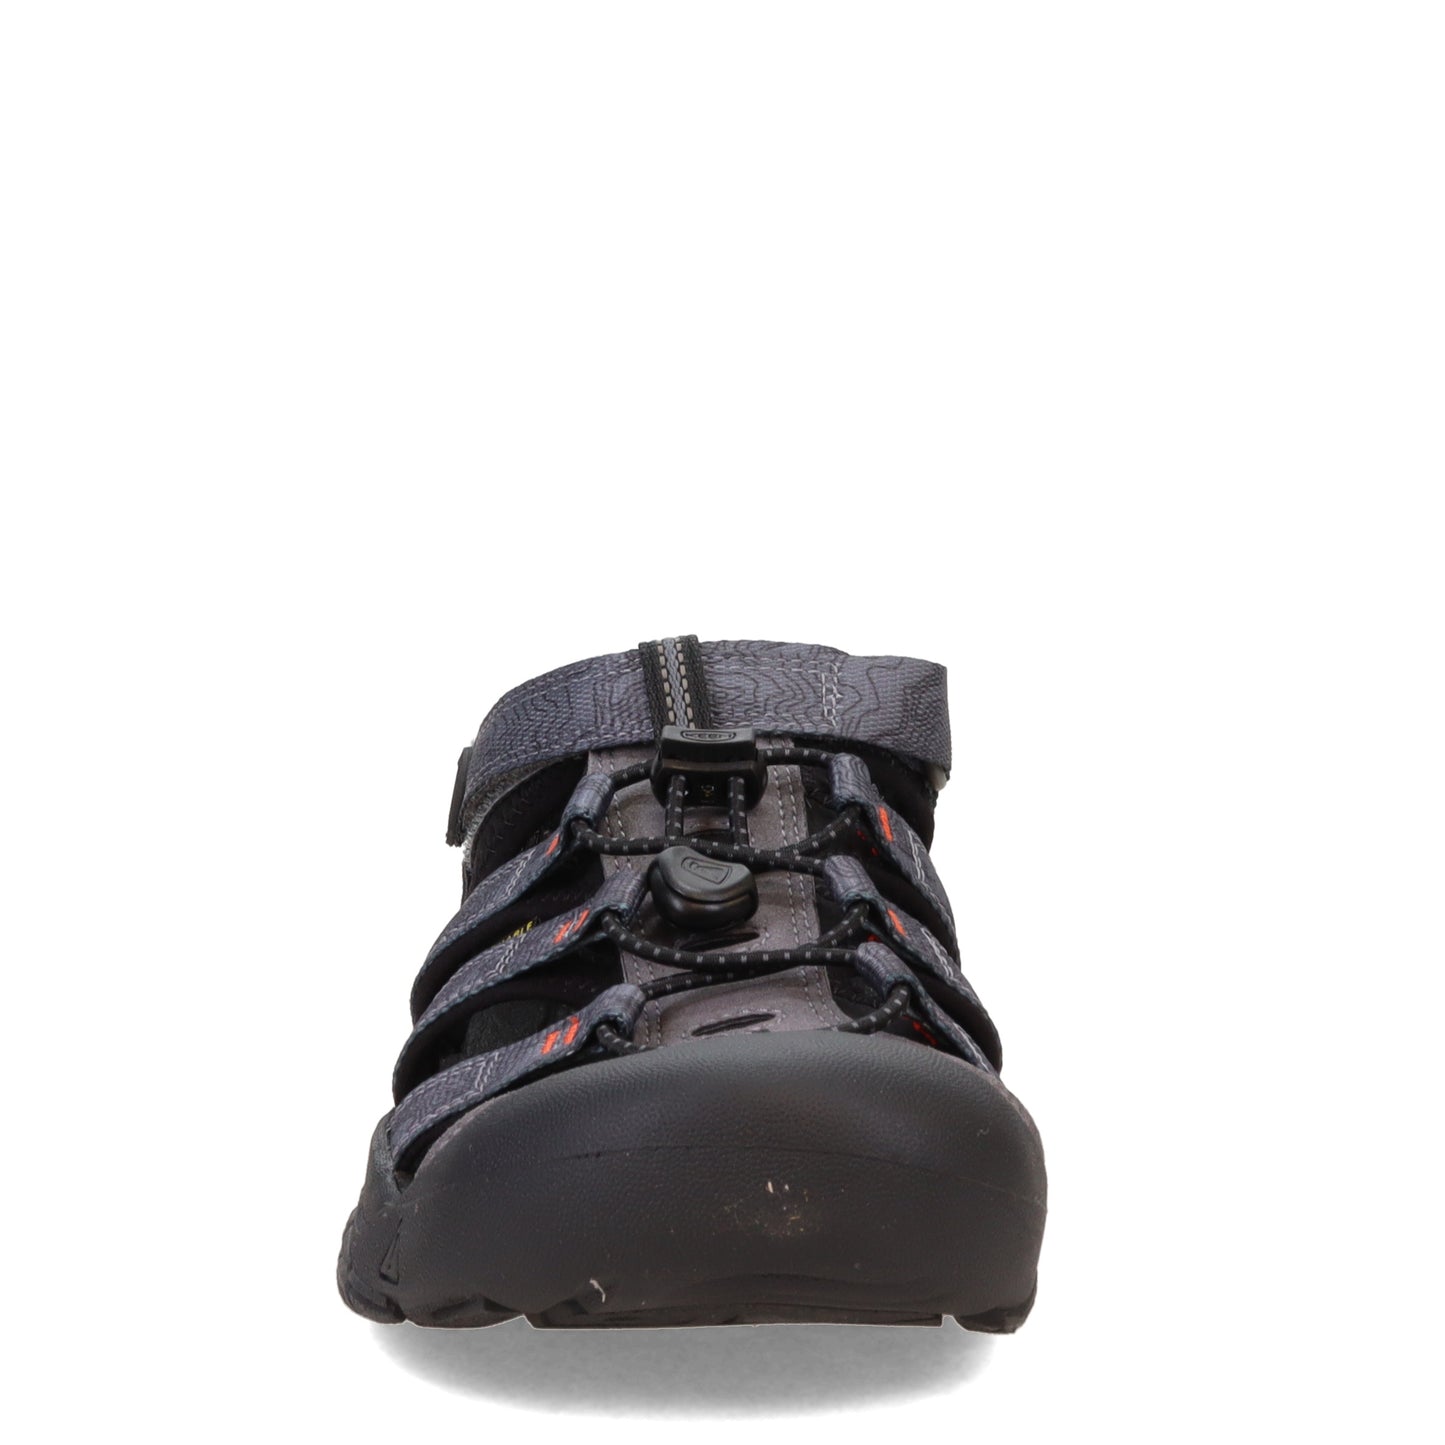 Peltz Shoes  Boy's KEEN Newport H2 Waterproof Sandal - Little Kid & Big Kid Steel Grey/Black 1026277